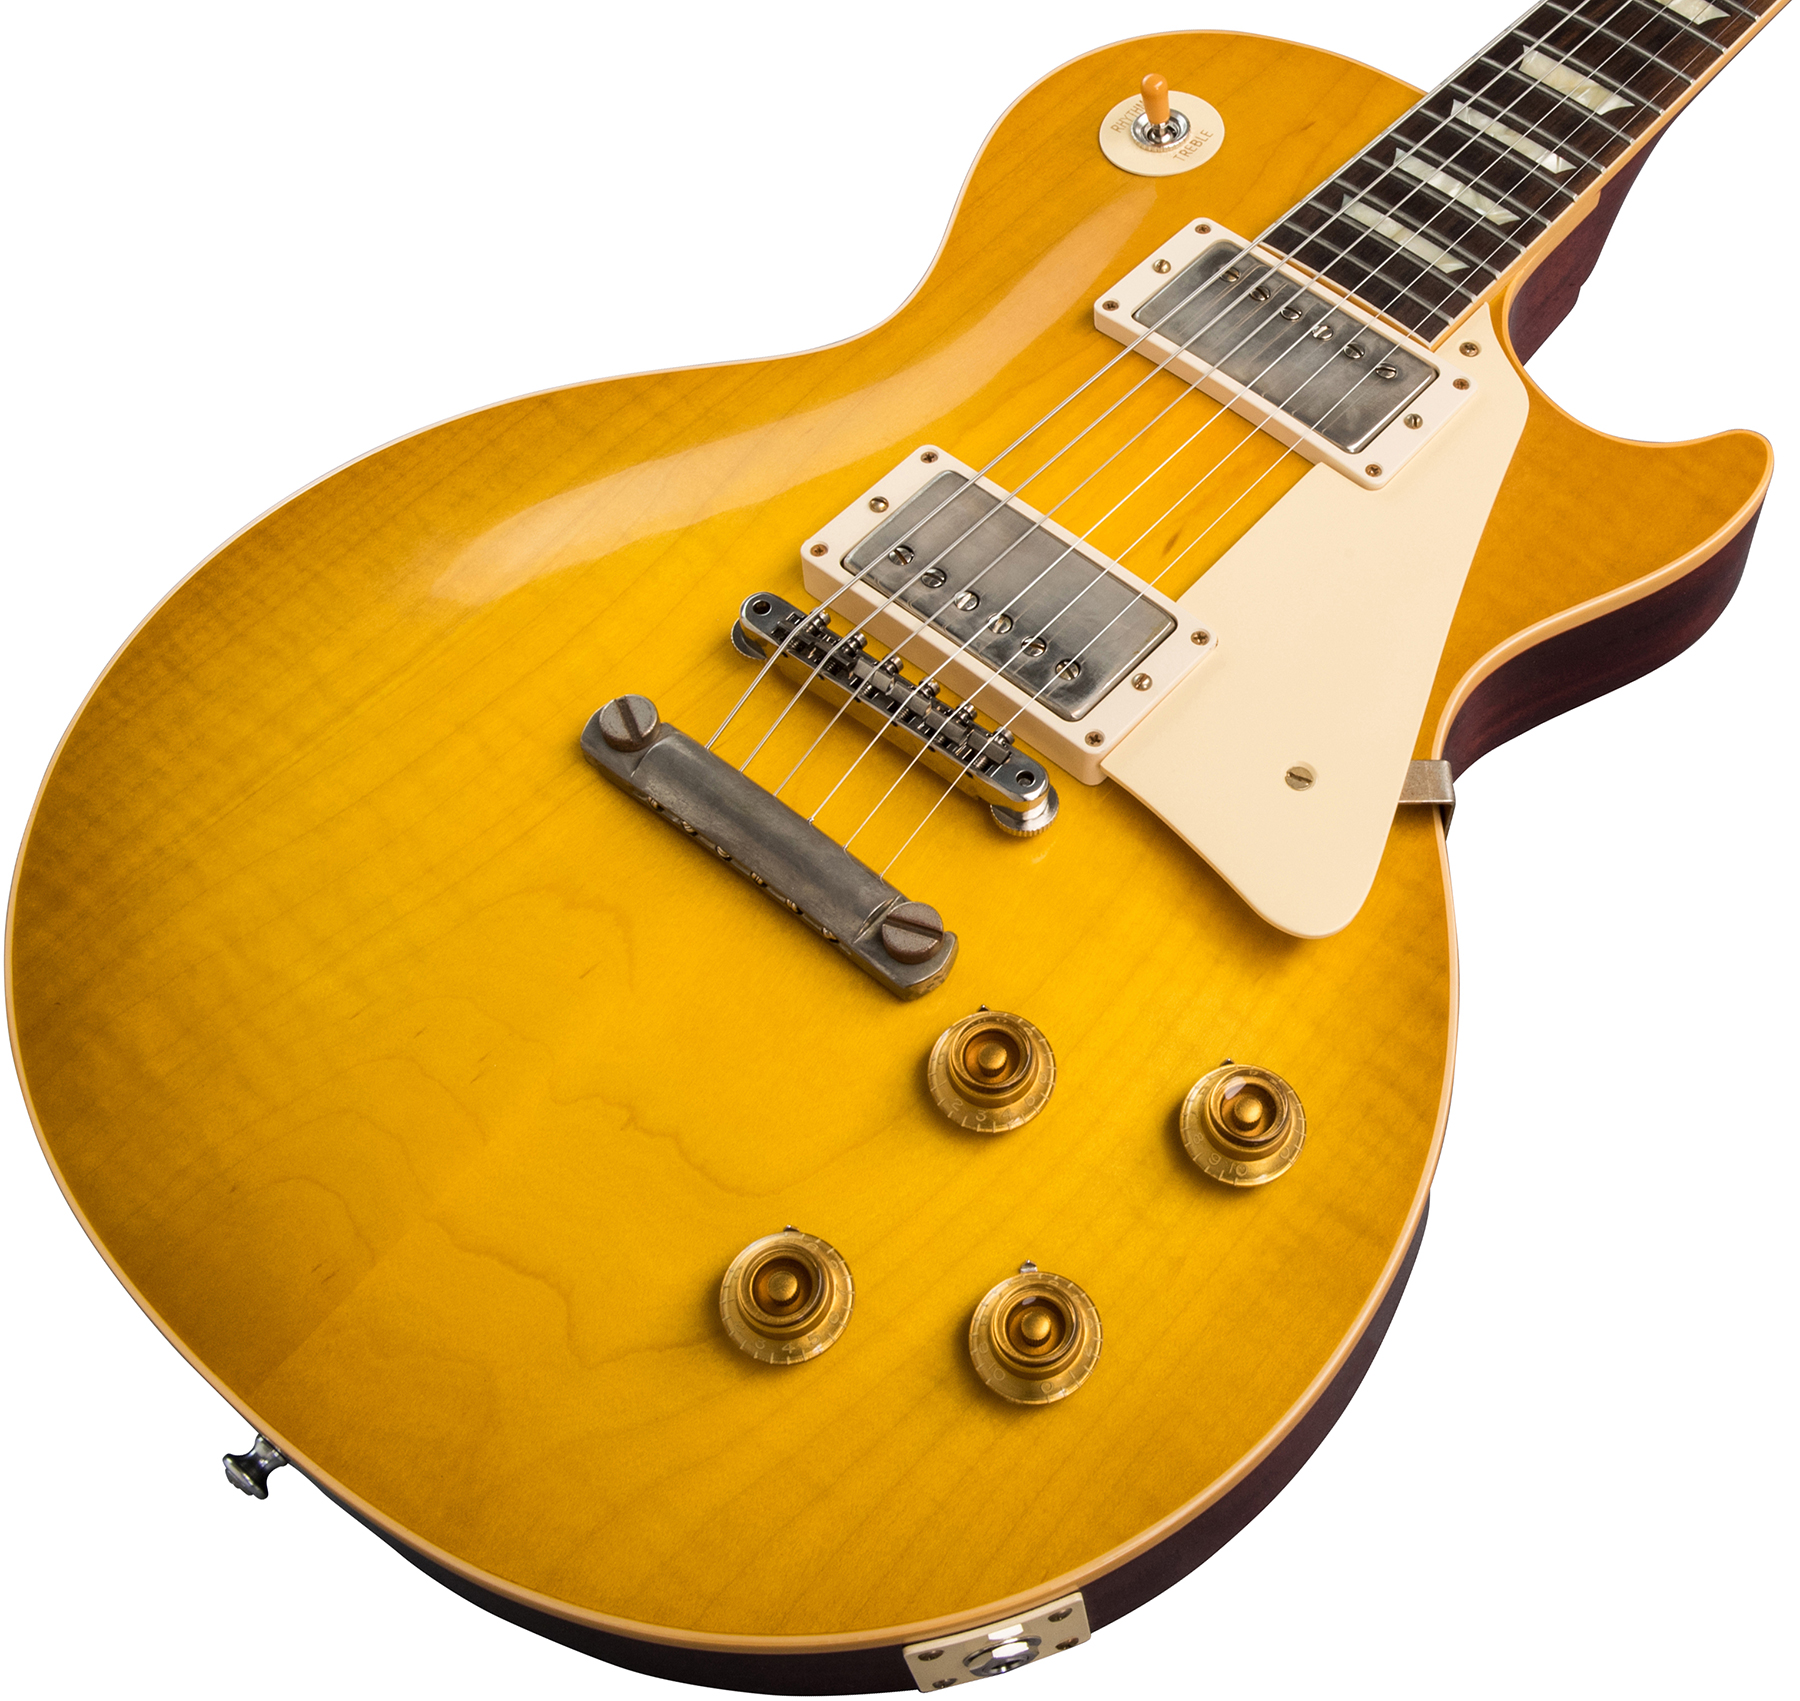 Gibson Custom Shop Les Paul Standard 1958 Reissue 2019 2h Ht Rw - Vos Lemon Burst - Guitarra eléctrica de corte único. - Variation 3